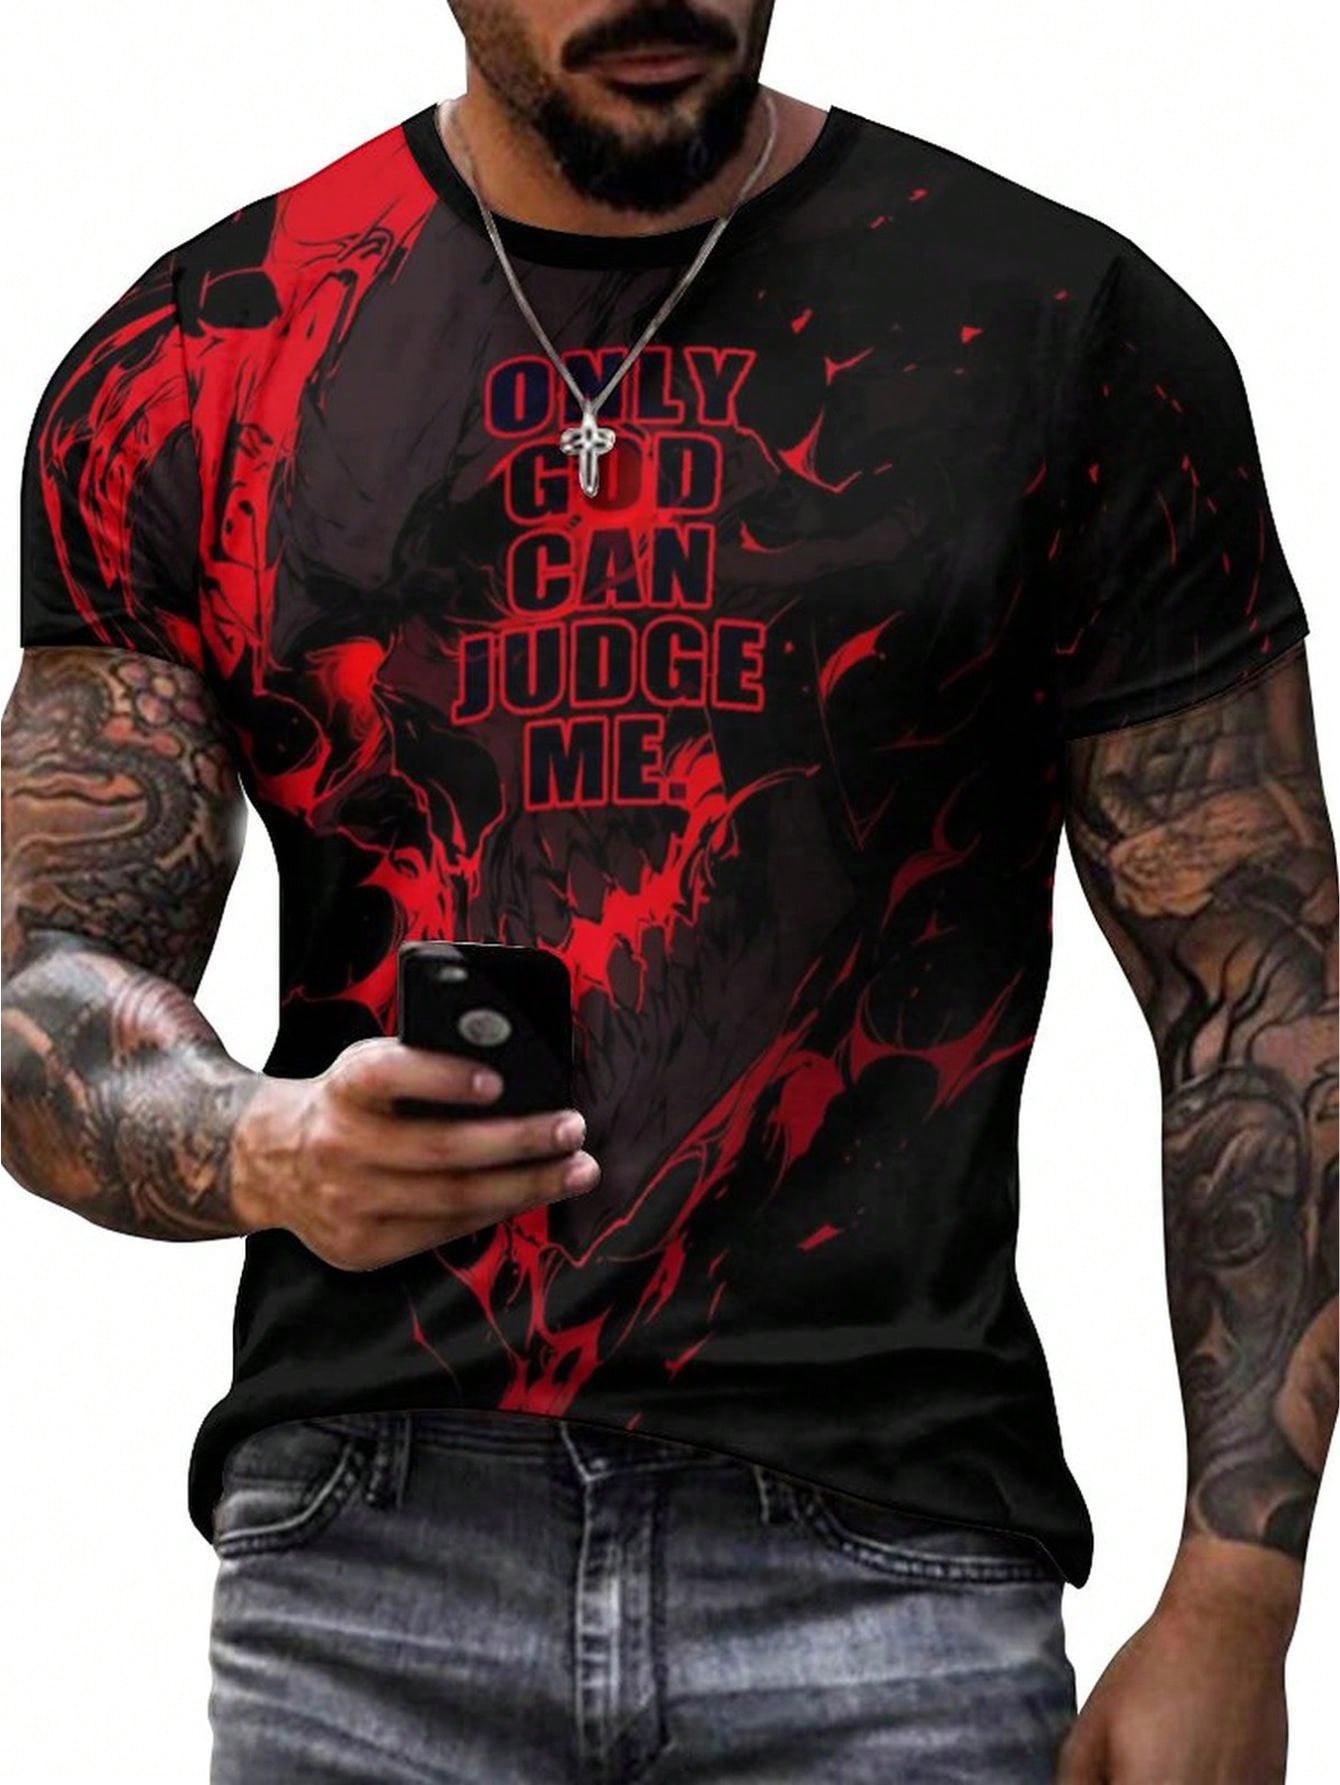 Мужская футболка с графическим рисунком, красный